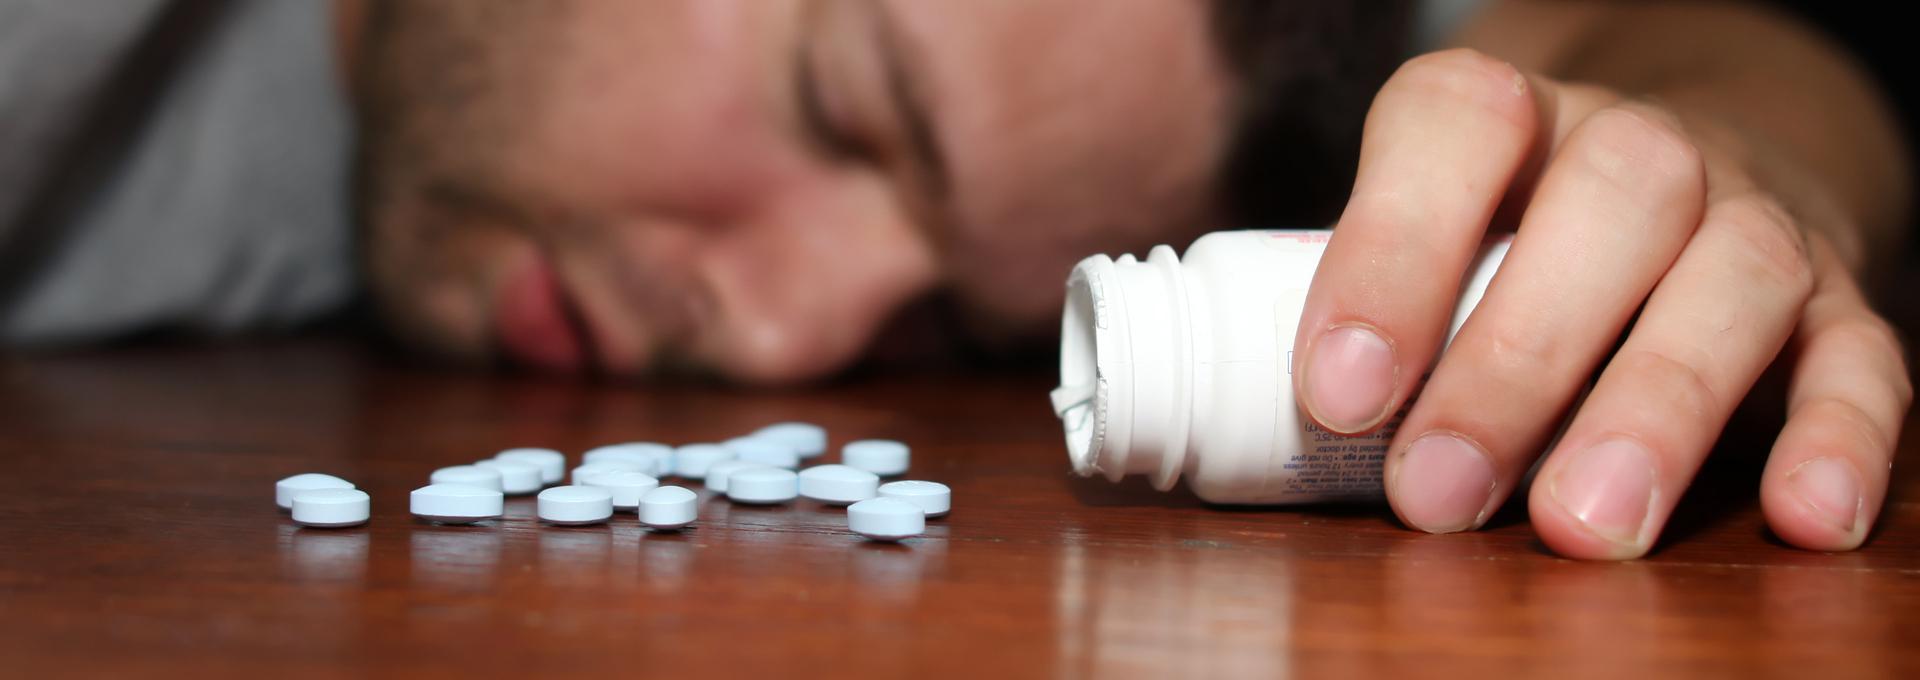 Попросил таблетки. Снотворное. Отравление таблетками. Передозировка таблетками. Седативными и снотворными средствами:.